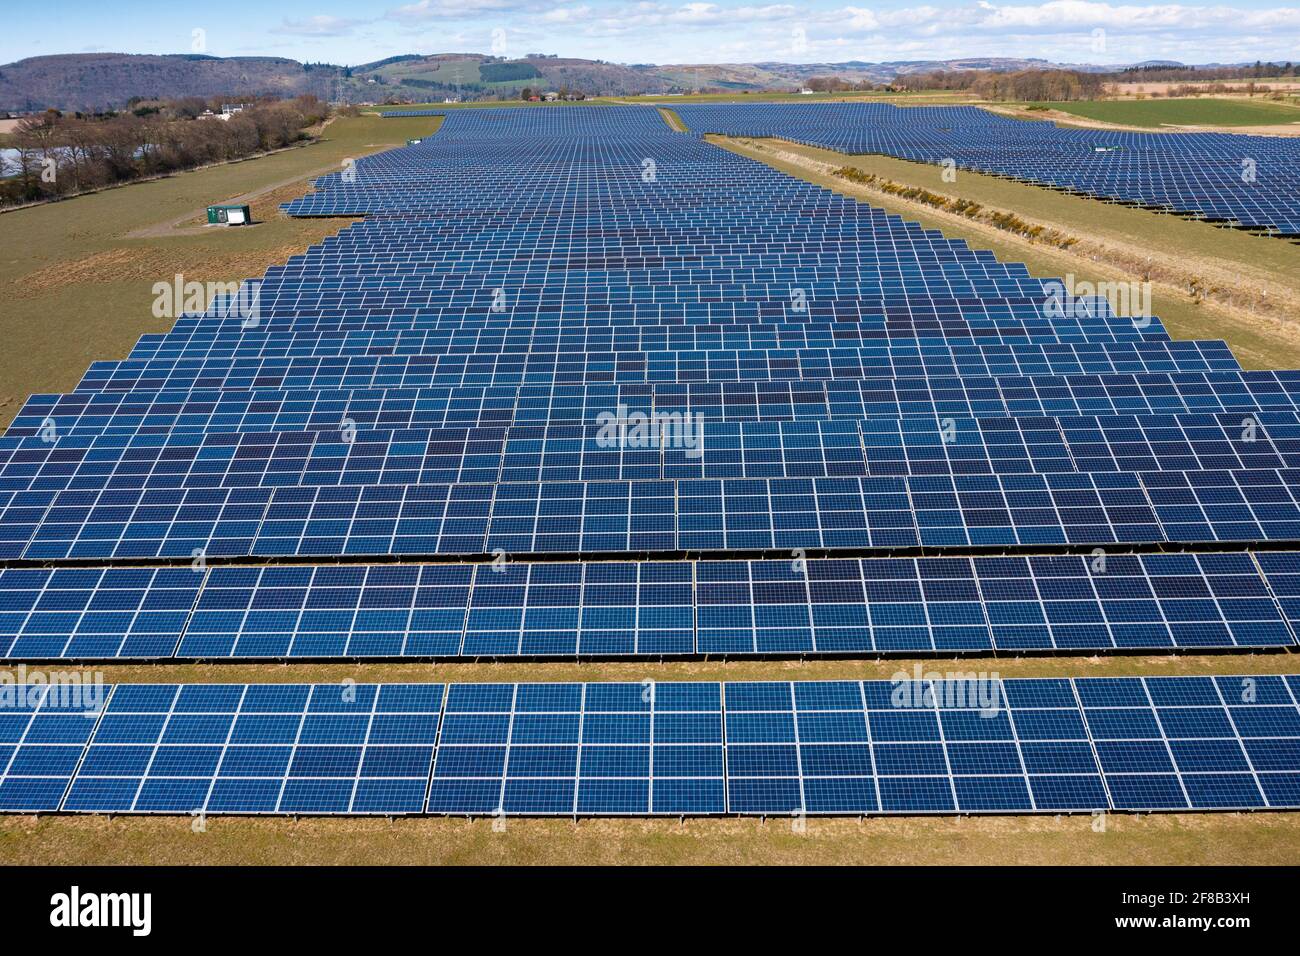 Vista aérea desde aviones teledirigidos de paneles solares en la granja de energía solar en Escocia, Reino Unido Foto de stock